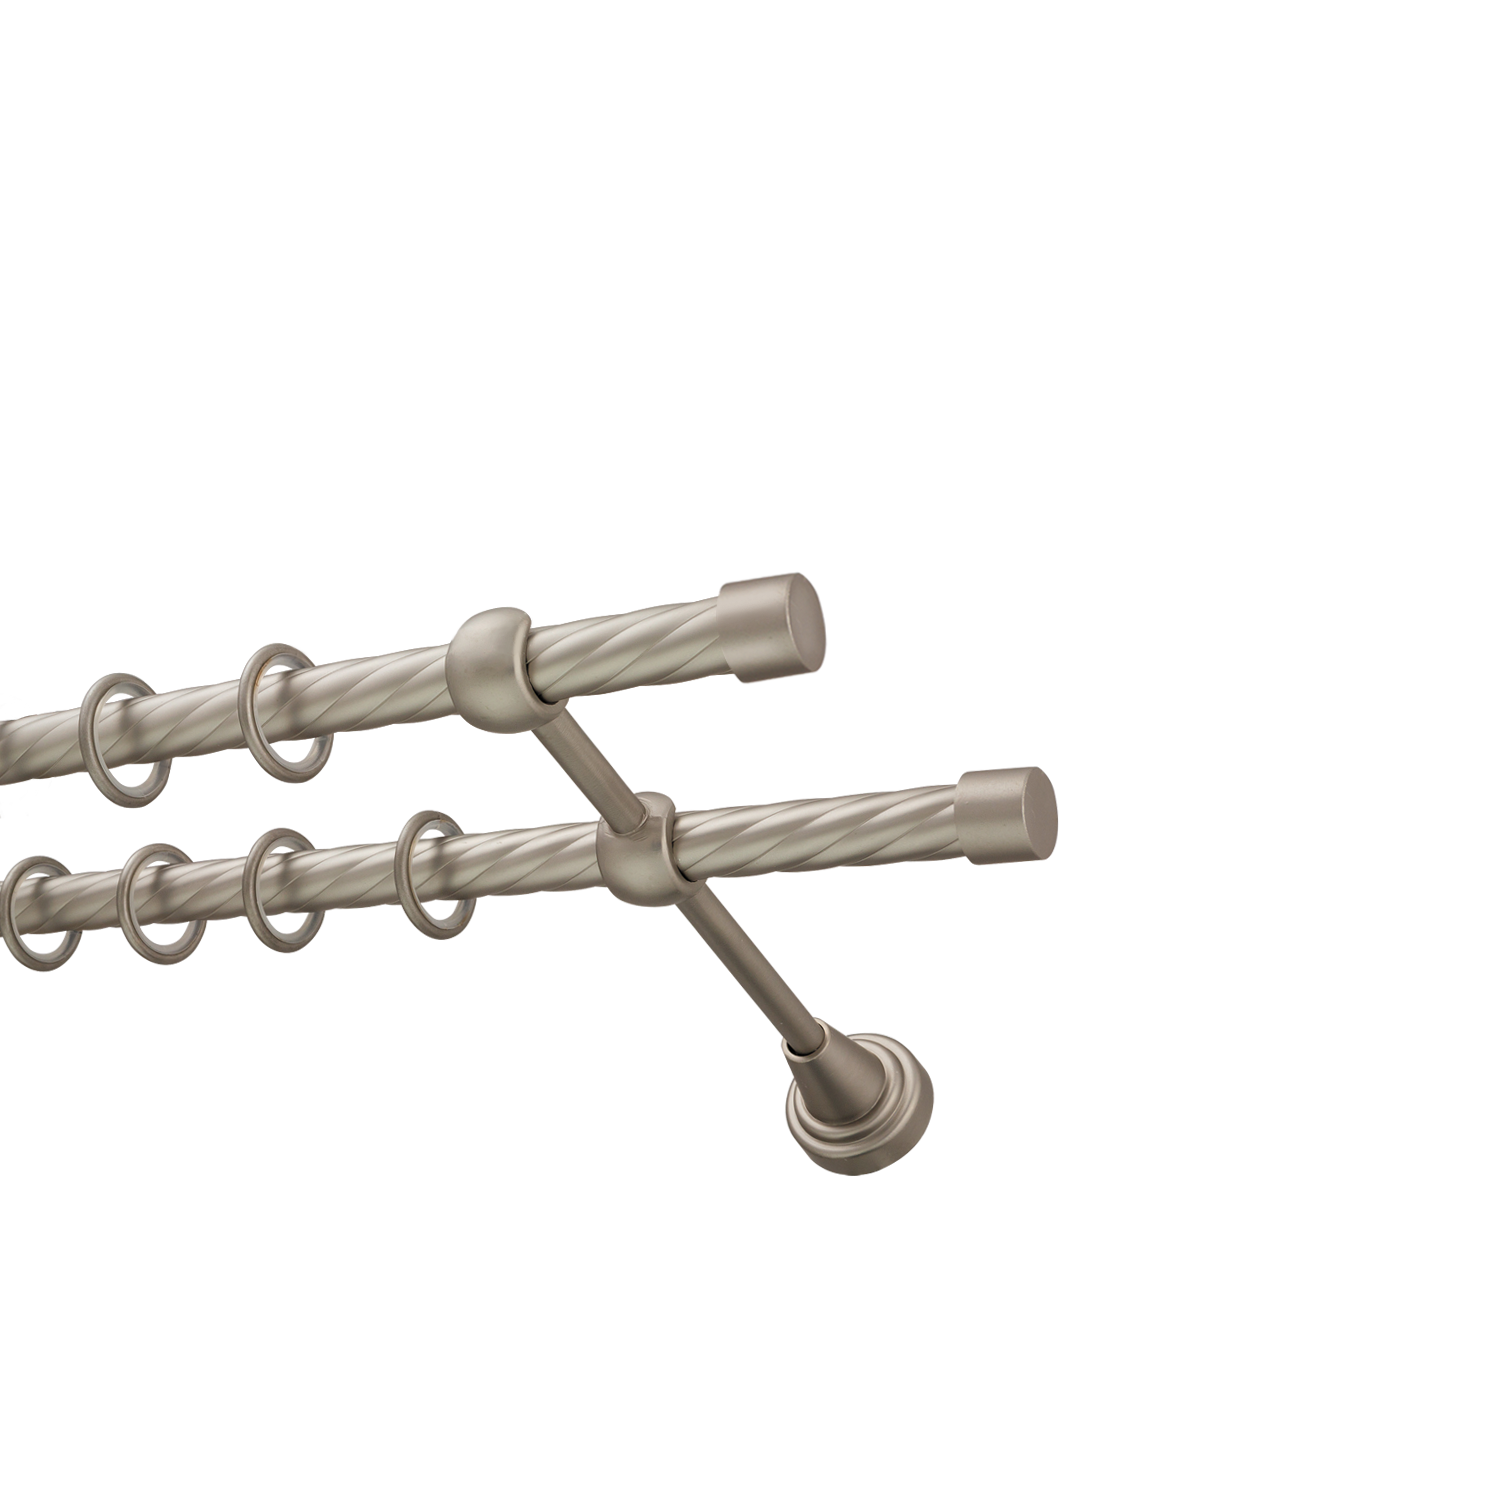 Металлический карниз для штор Заглушка, двухрядный 16/16 мм, сталь, витая штанга, длина 180 см - фото Wikidecor.ru